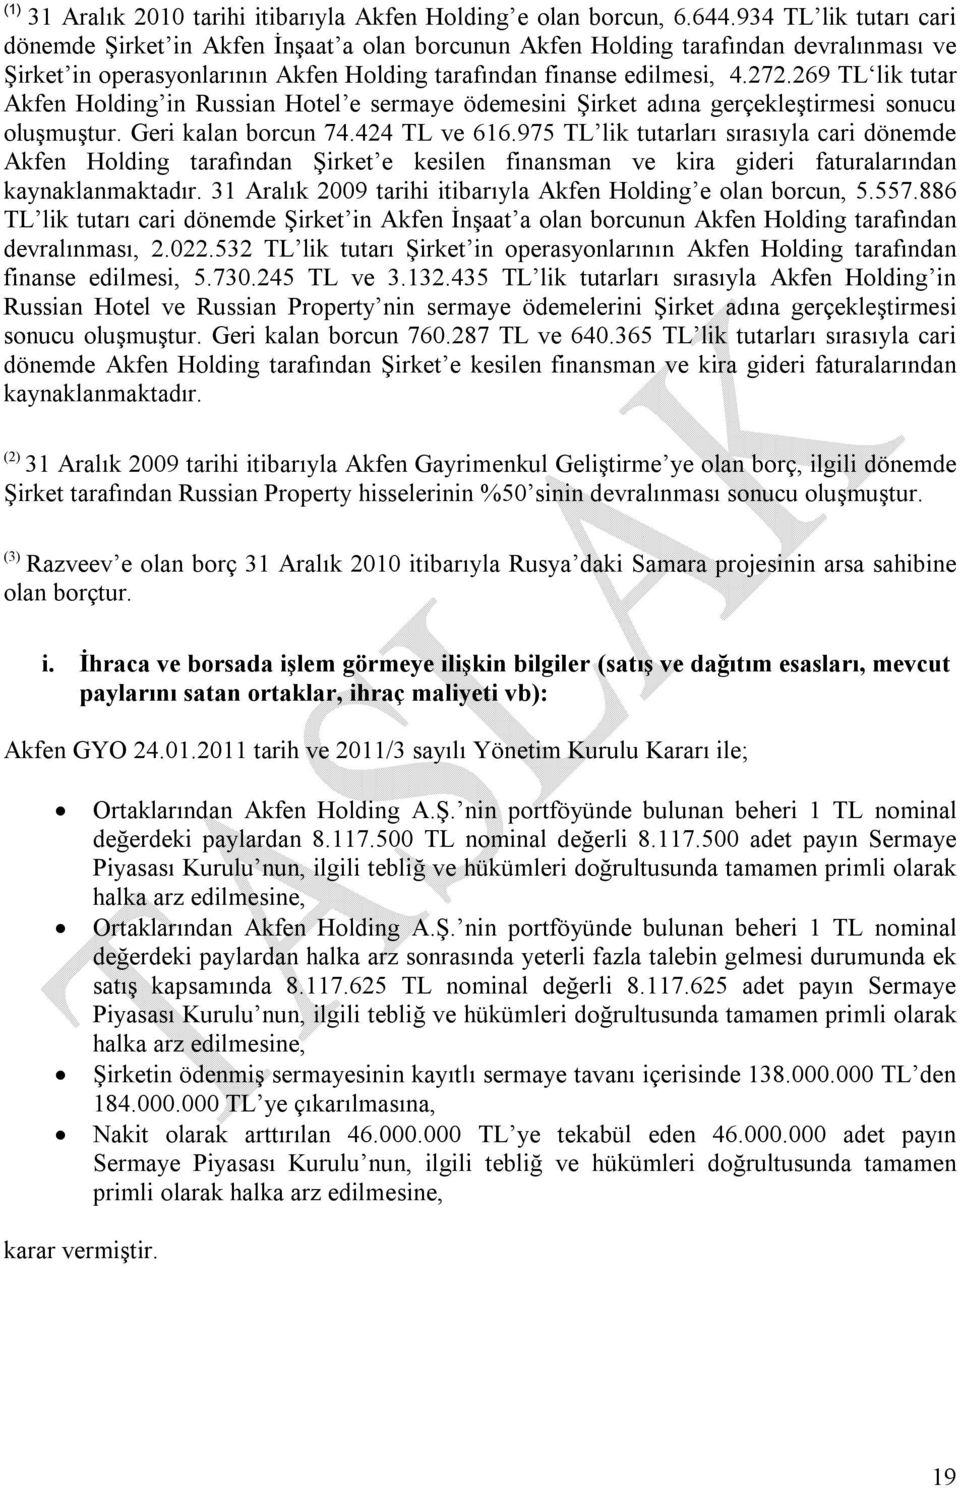 269 TL lik tutar Akfen Holding in Russian Hotel e sermaye ödemesini Şirket adına gerçekleştirmesi sonucu oluşmuştur. Geri kalan borcun 74.424 TL ve 616.